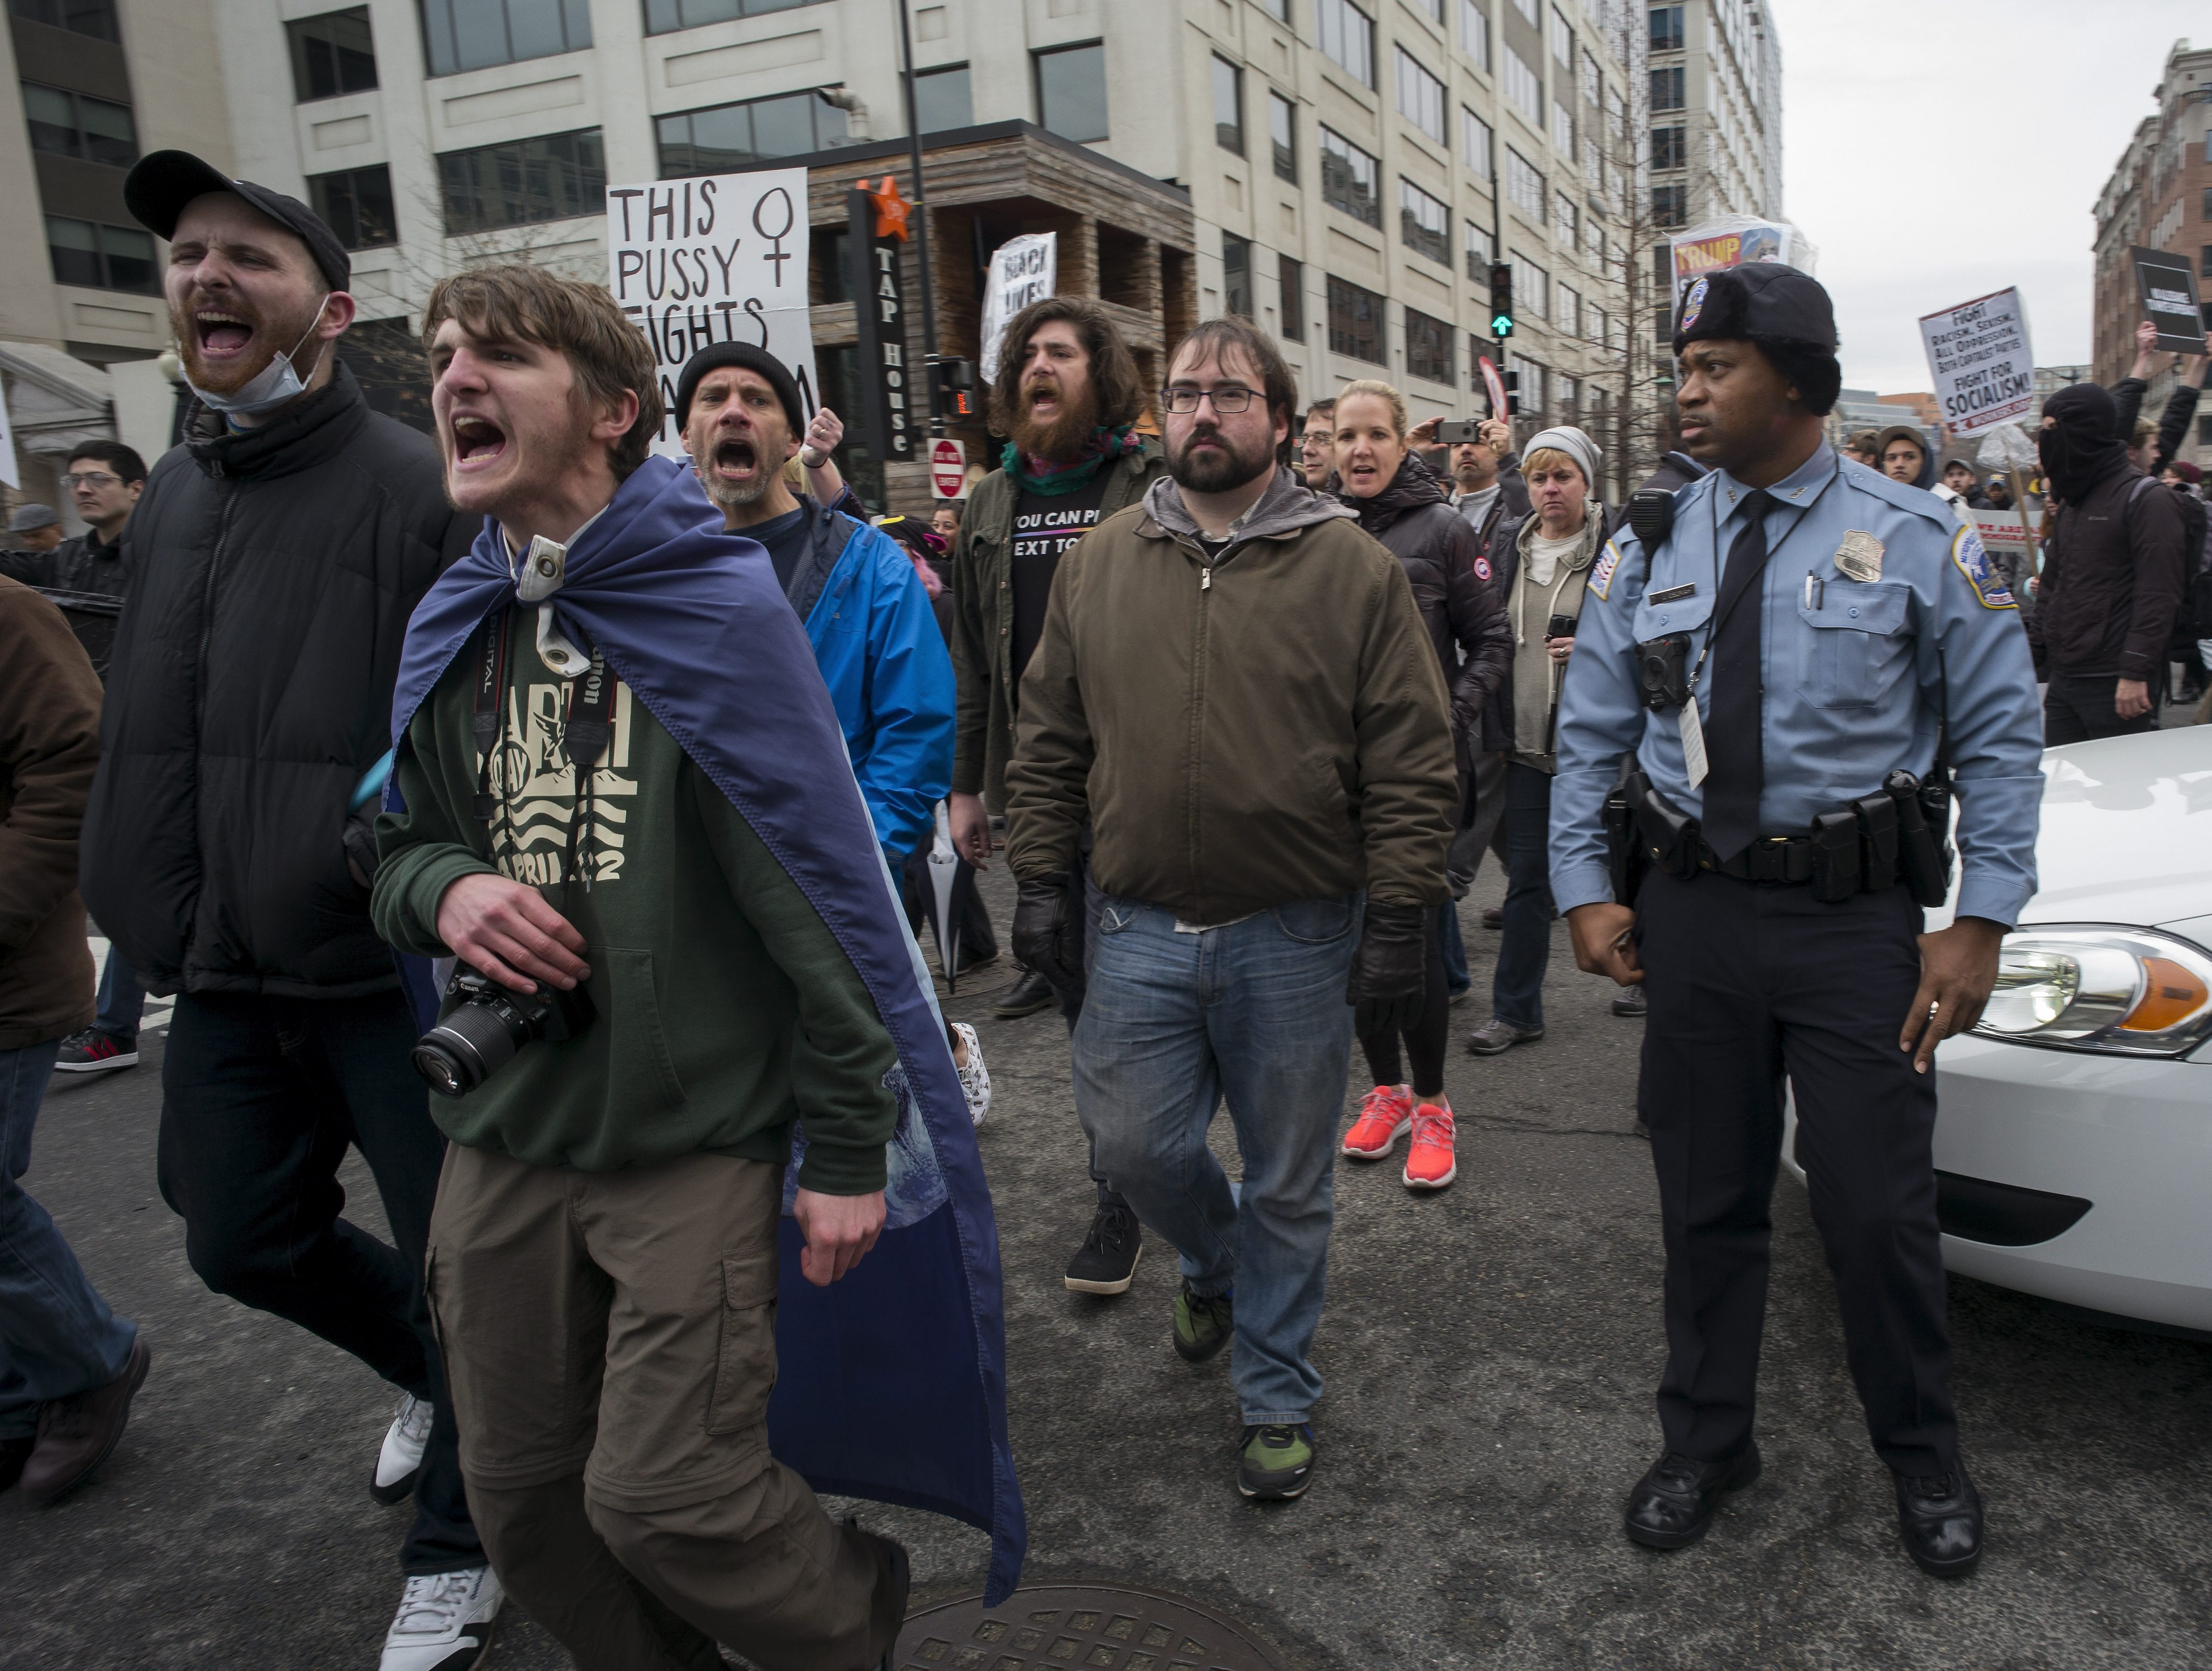 Вашингтонската полиция е арестувала повече от 90 протестиращи, предаде АФП. Срещу провокиращите насилие са използвани лютив спрей и сълзотворен газ. Според говорител на полицията задържаните са обвинени във вандализъм и нарушаване на обществения ред.
Информацията сочи още, че след конфронтации с демонстрантите двама полицаи са пострадали. Има и повредени полицейски автомобили.